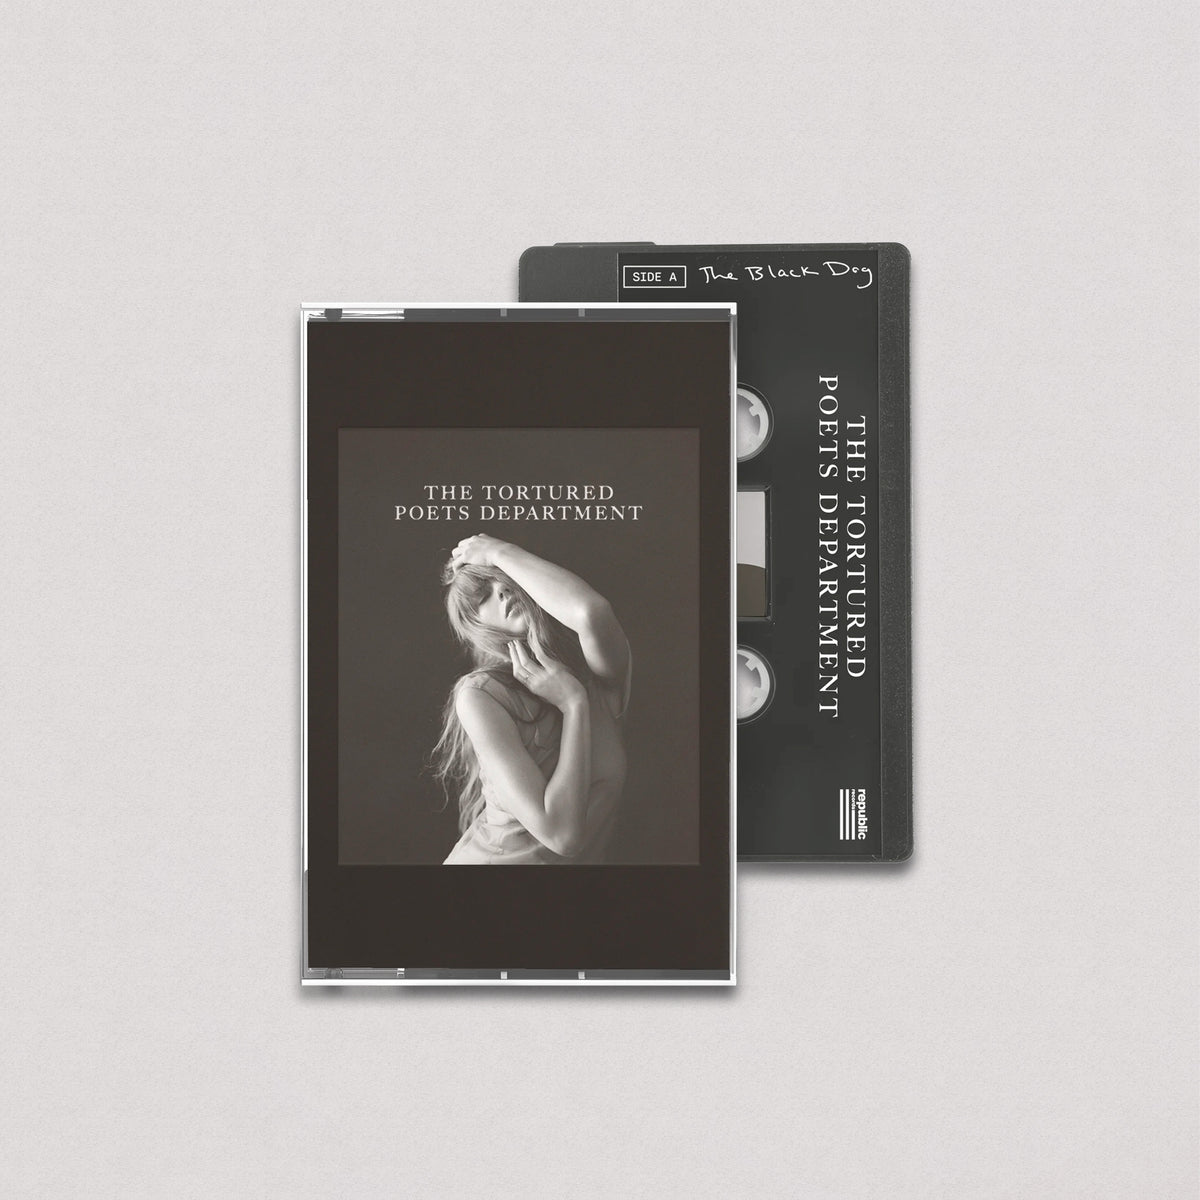 Taylor Swift - The Tortured Poets Department + Bonus Track "The Black Dog" (Cassette)